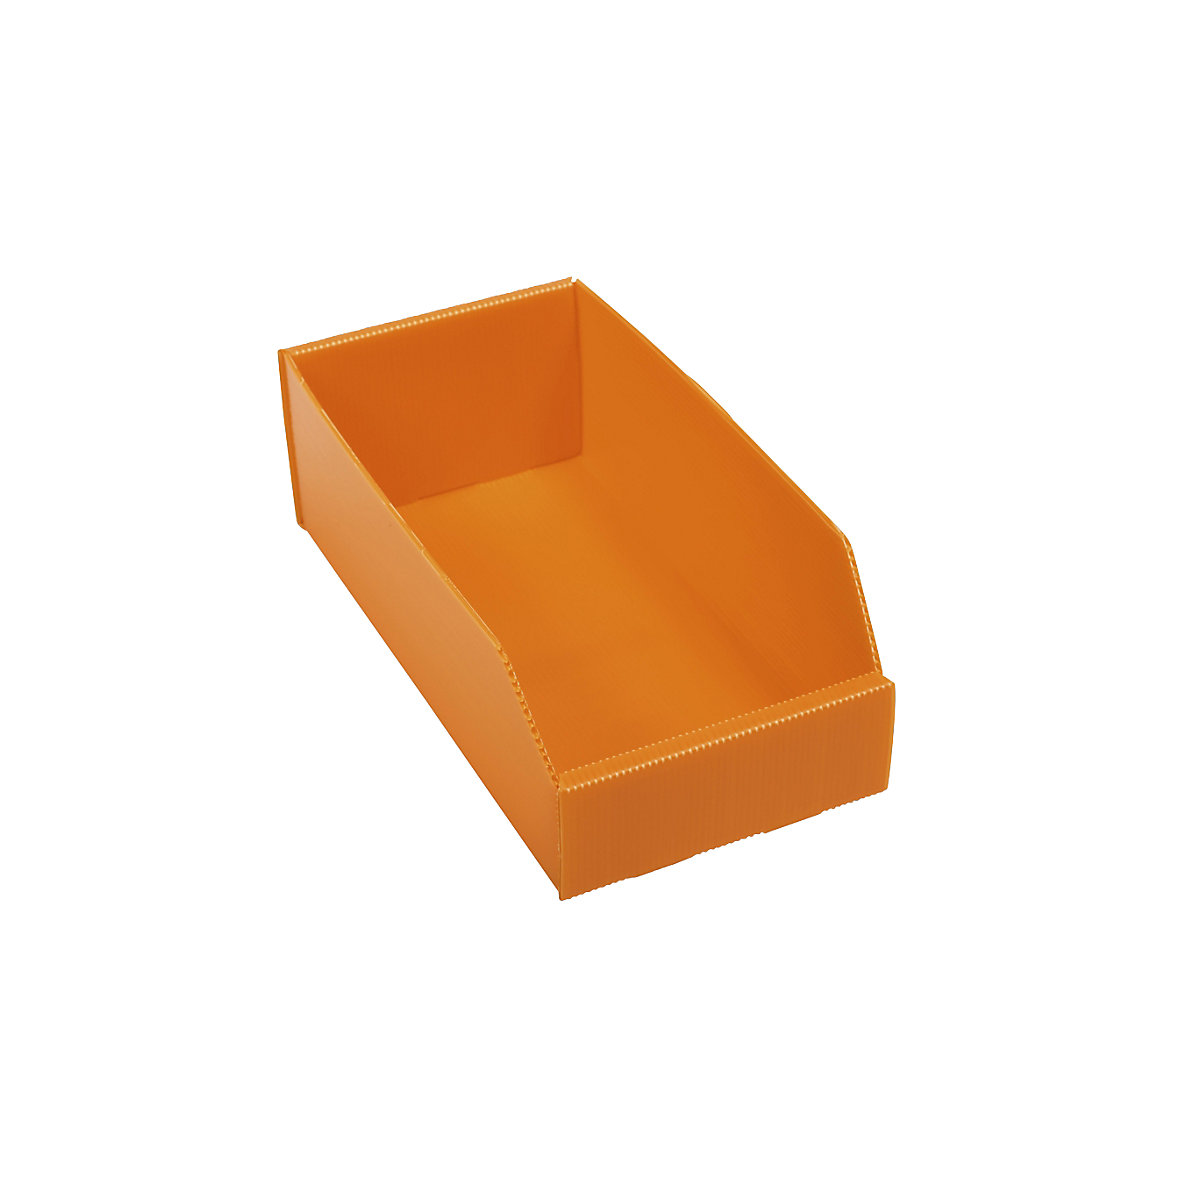 Plastová regálová přepravka, skládací, d x š x v 300x150x100 mm, oranžová, bal.j. 25 ks-6